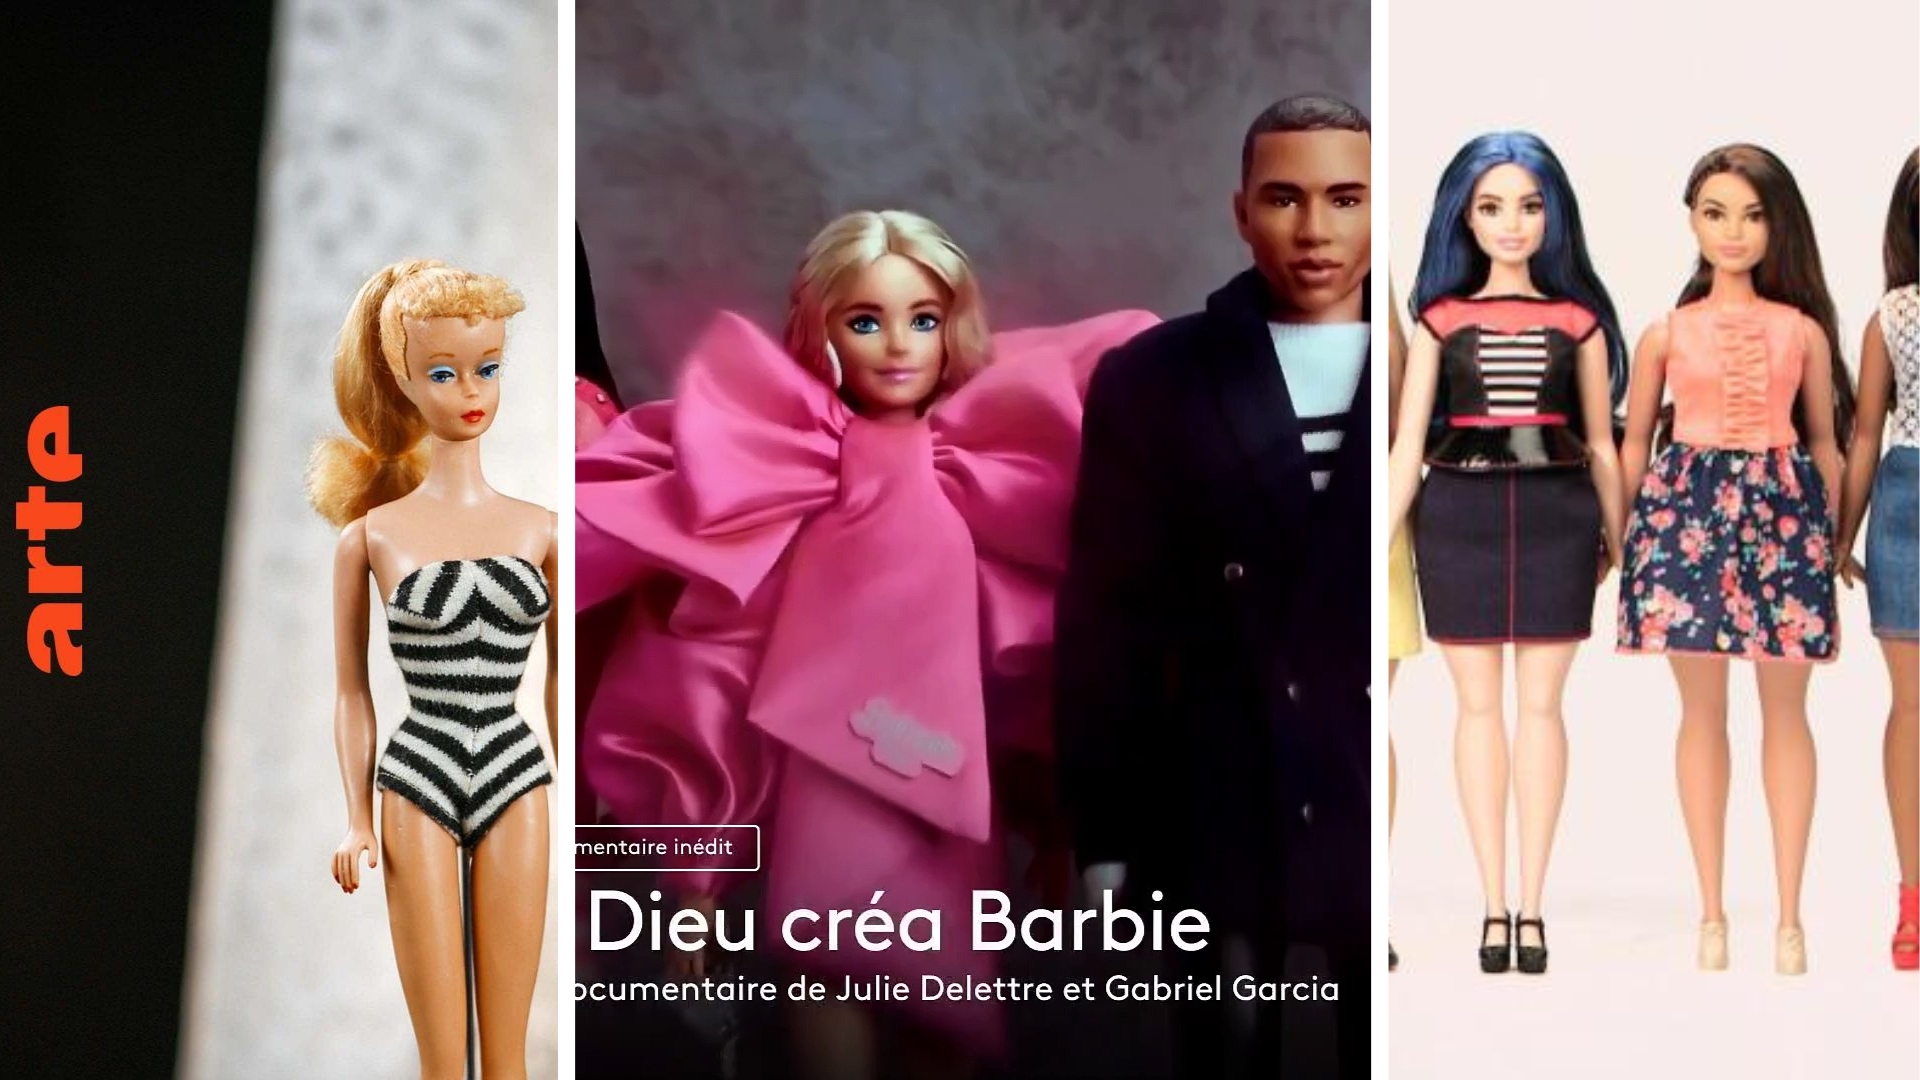 Barbie, figure émancipatrice ou oppressive ? Ces 3 documentaires décortiquent la question